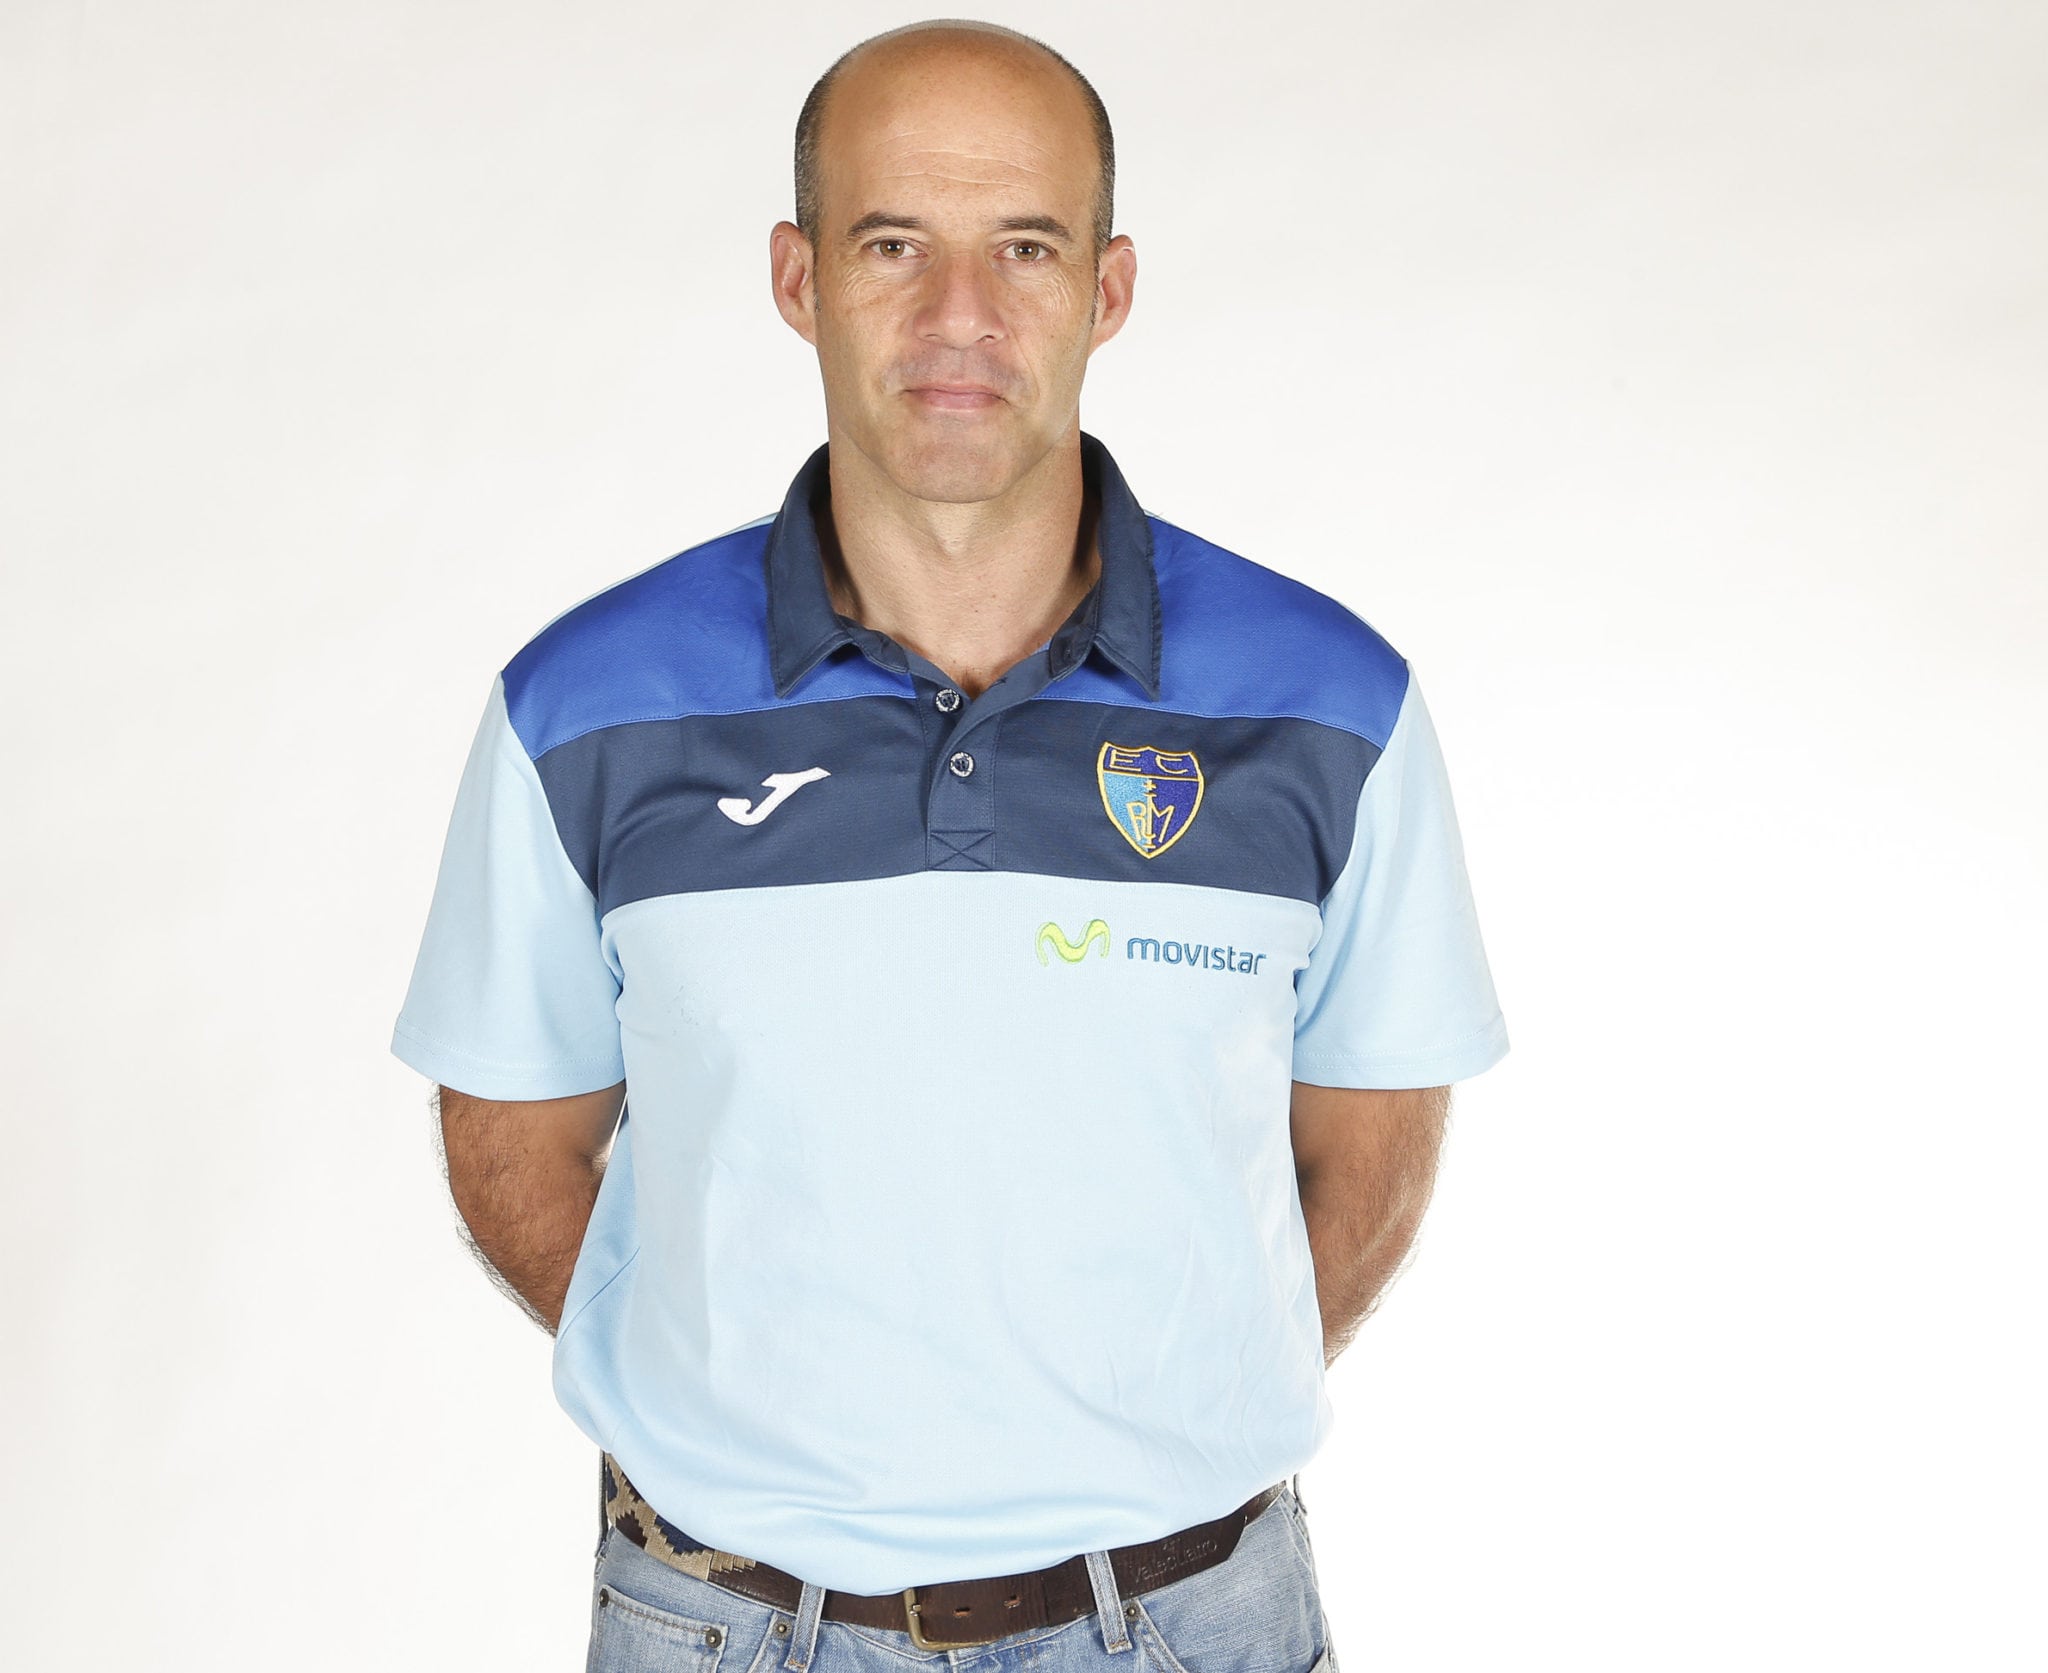 El entrenador Alberto Lorenzo, ante el #EstuGranca: «Hemos entrenado con disciplina, compromiso y normalidad»